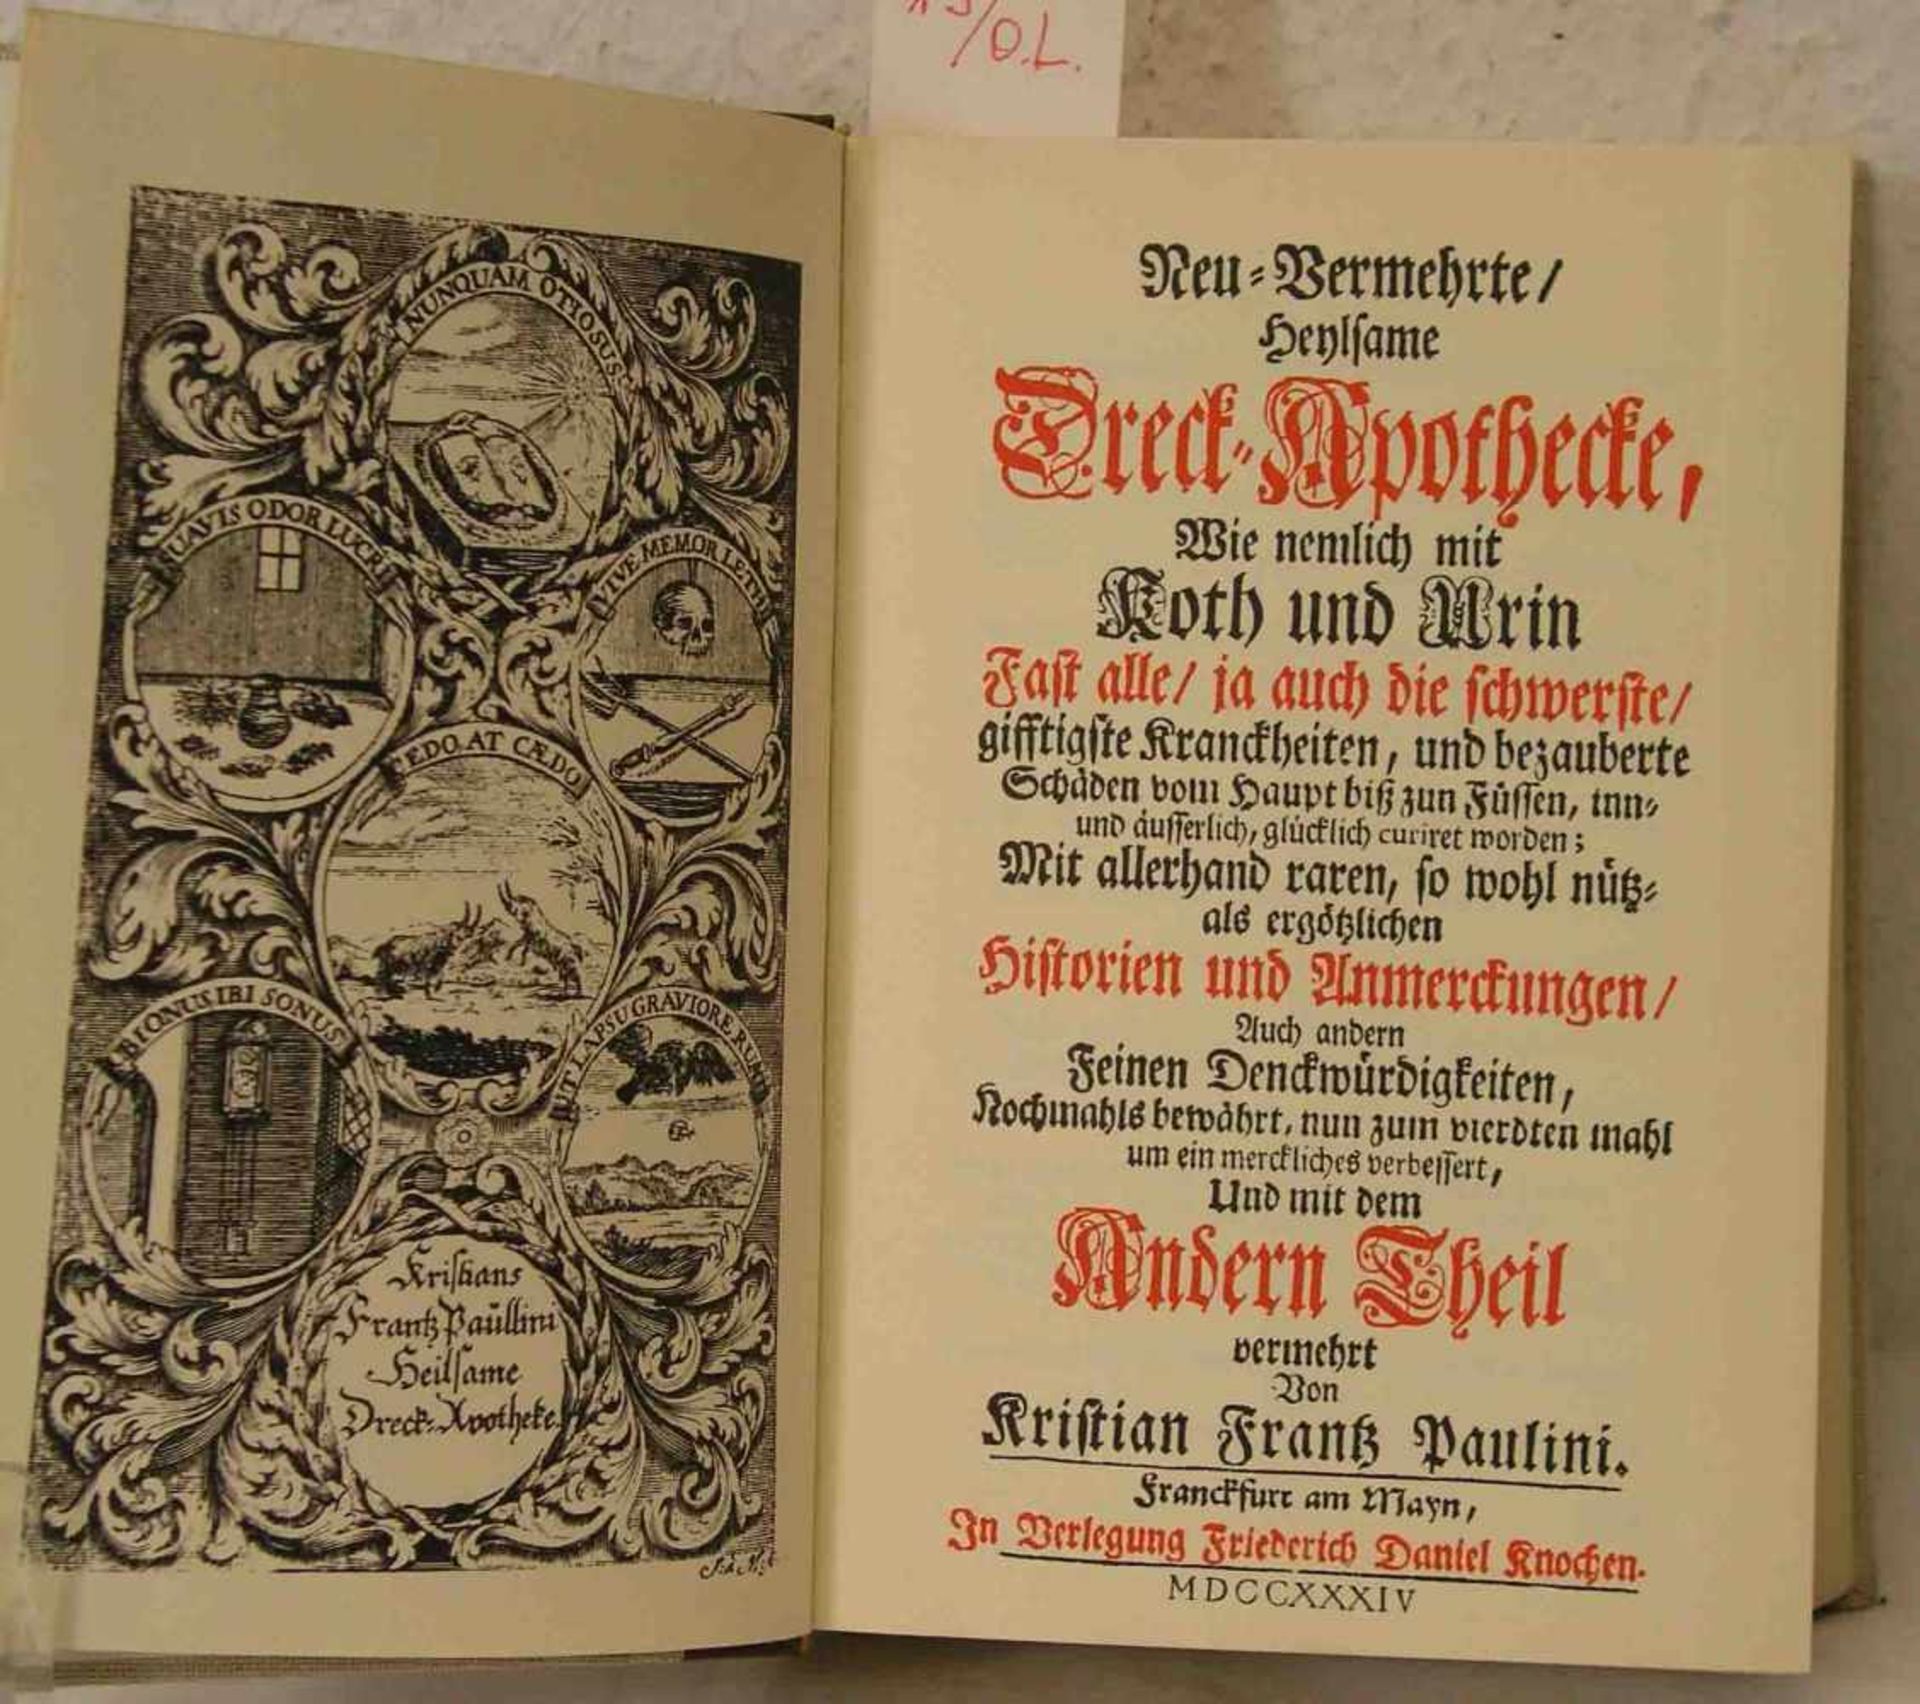 Paulini, Kristian Frantz: "Heilsame Dreck-Apotheke 1734". Neuer Nachdruck.